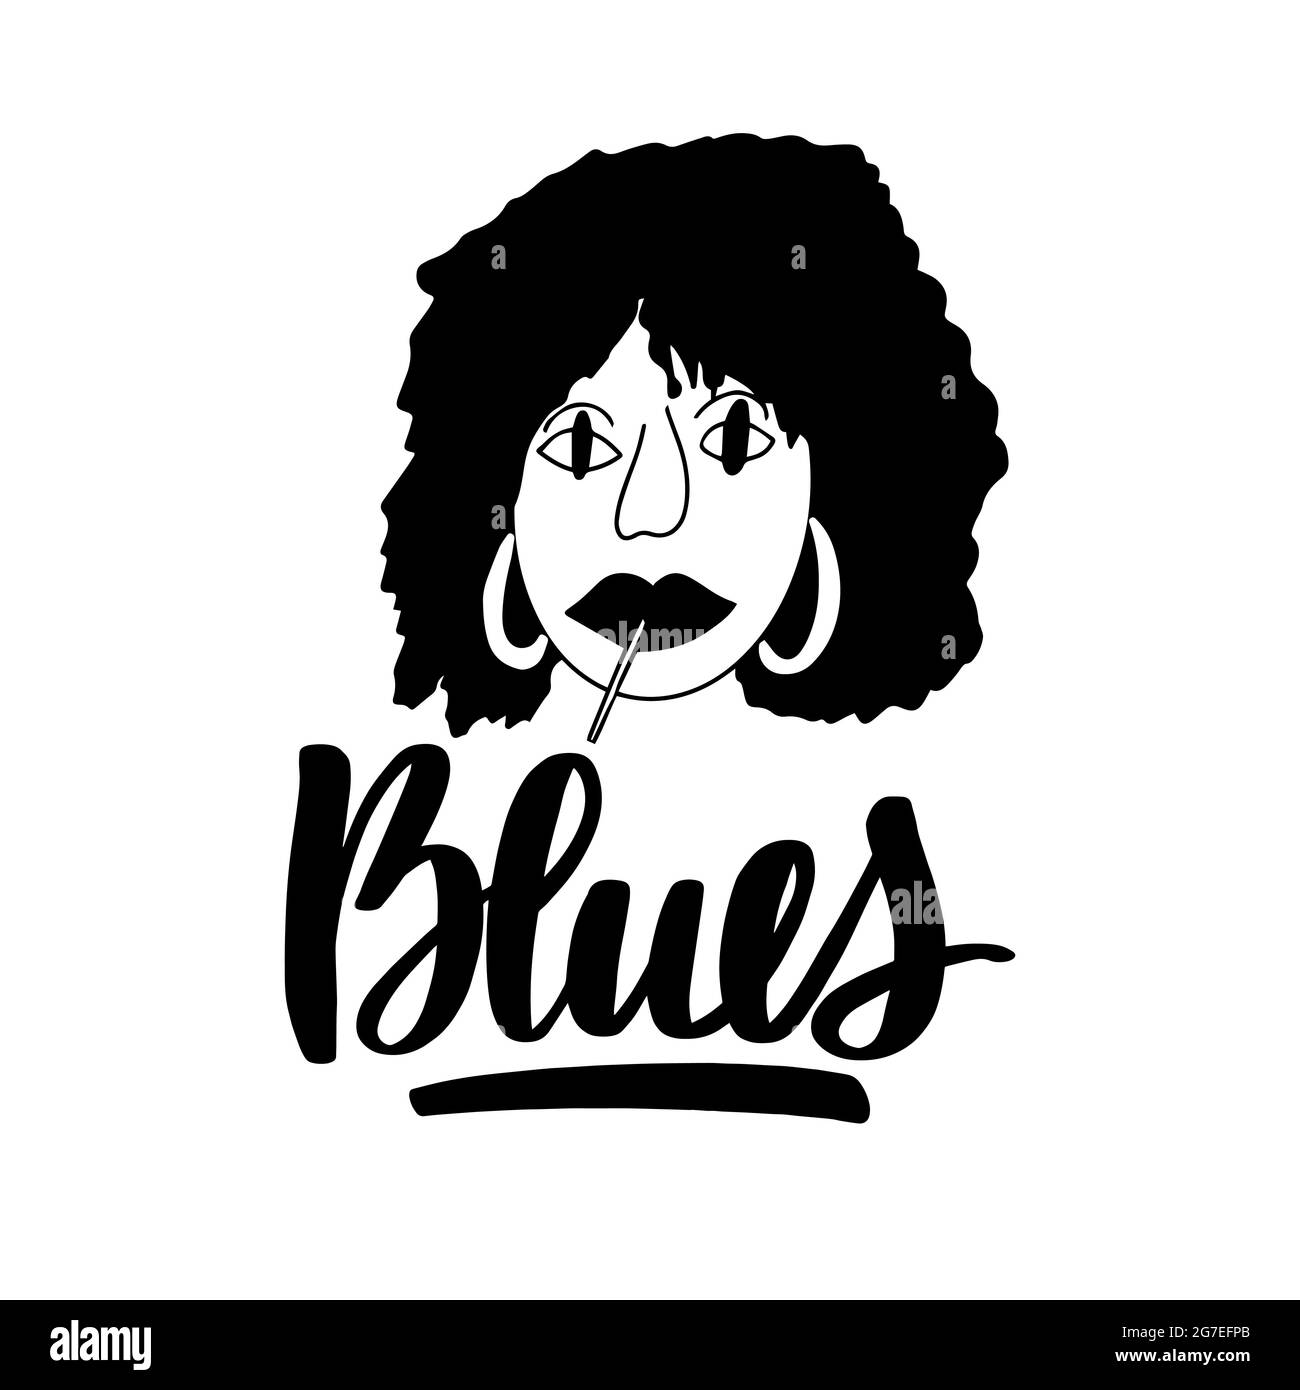 Blues - poster tipografico disegnato a mano. Concettuale scritto a mano Illustrazione Vettoriale